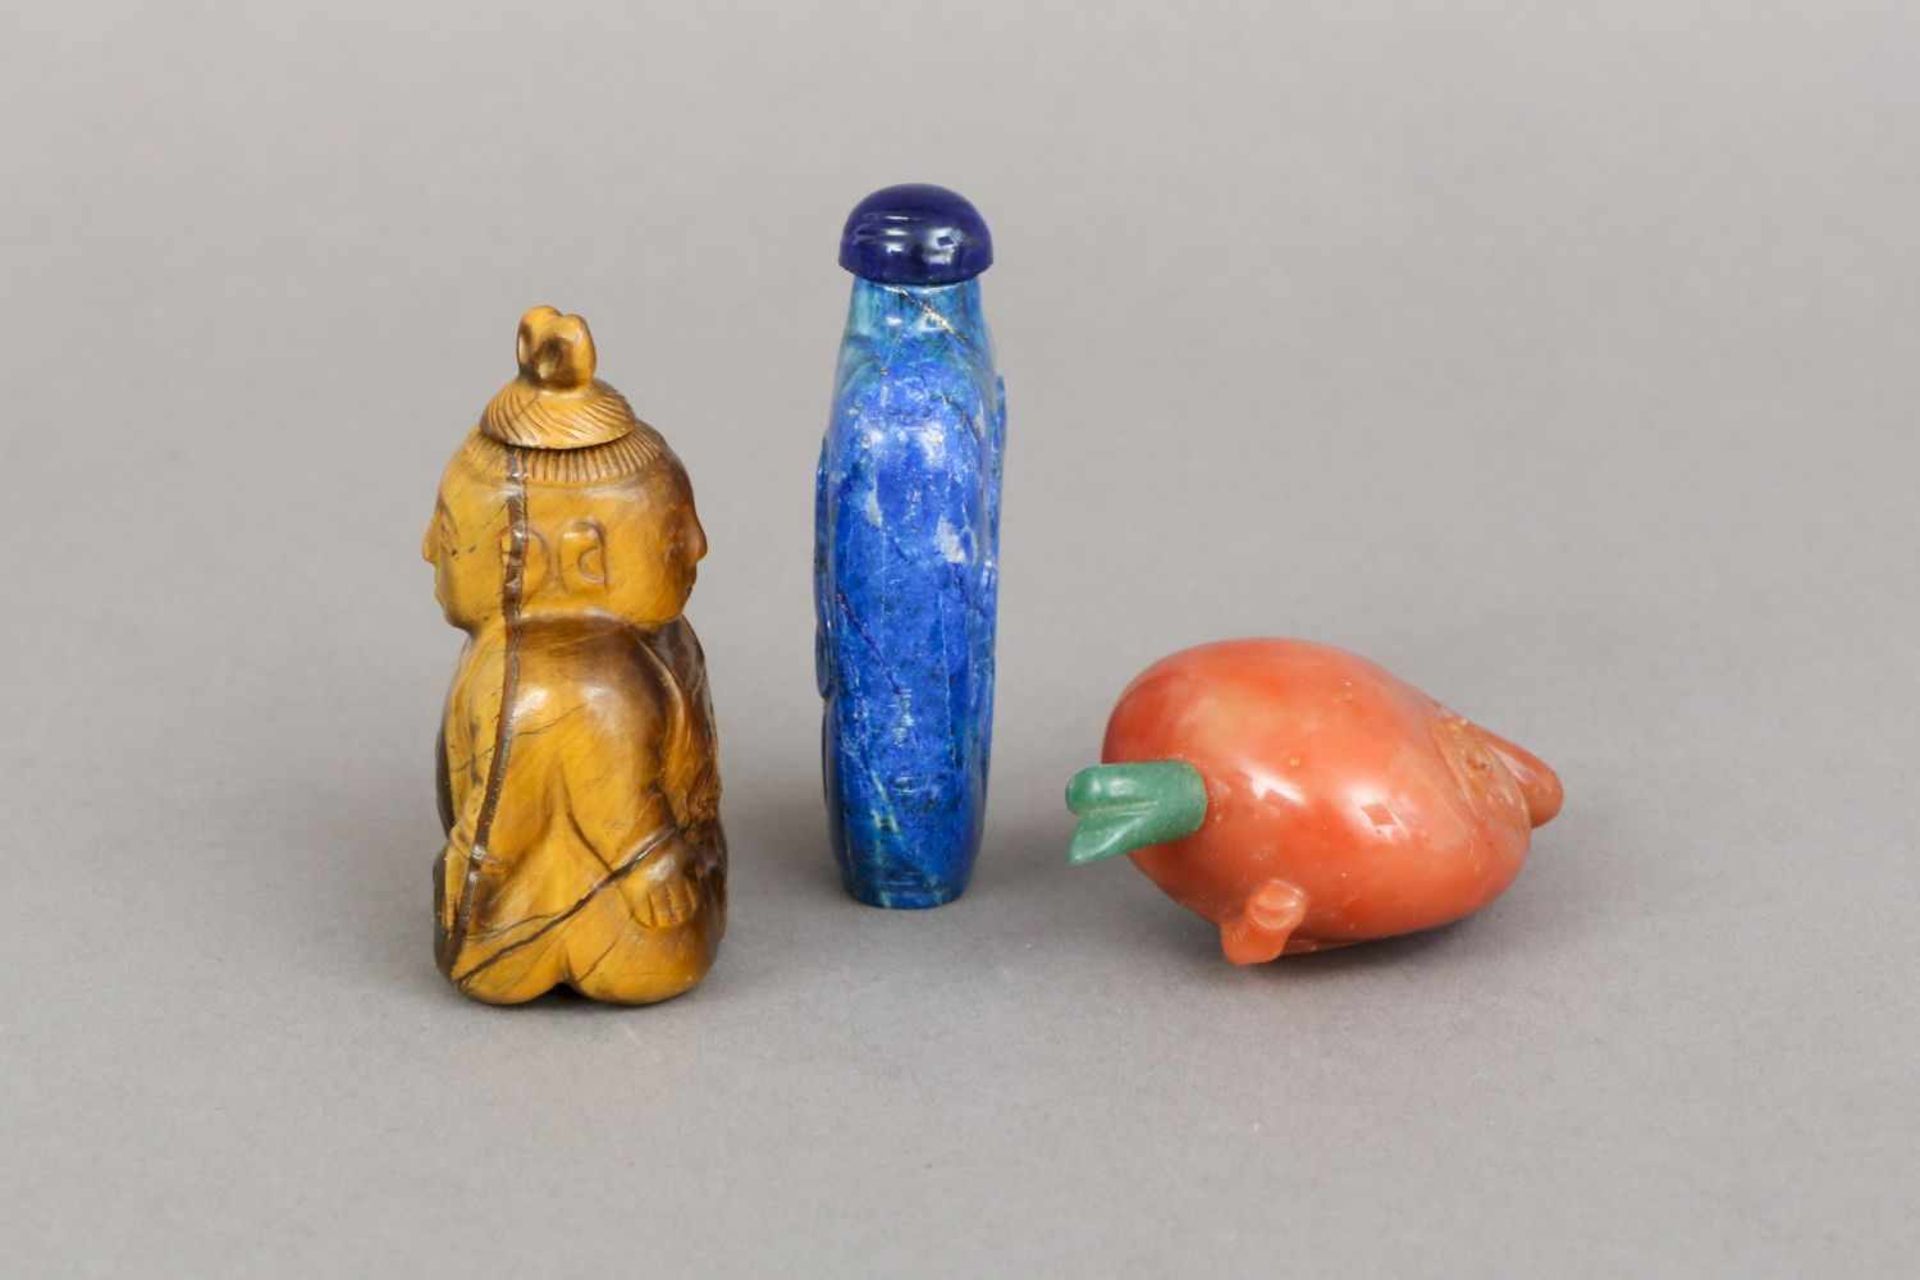 3 chinesische Snuff-bottles, Stein, geschnitzt1x Tigerauge in Form eines Buddhas (beidseitig), 1 x - Image 3 of 3